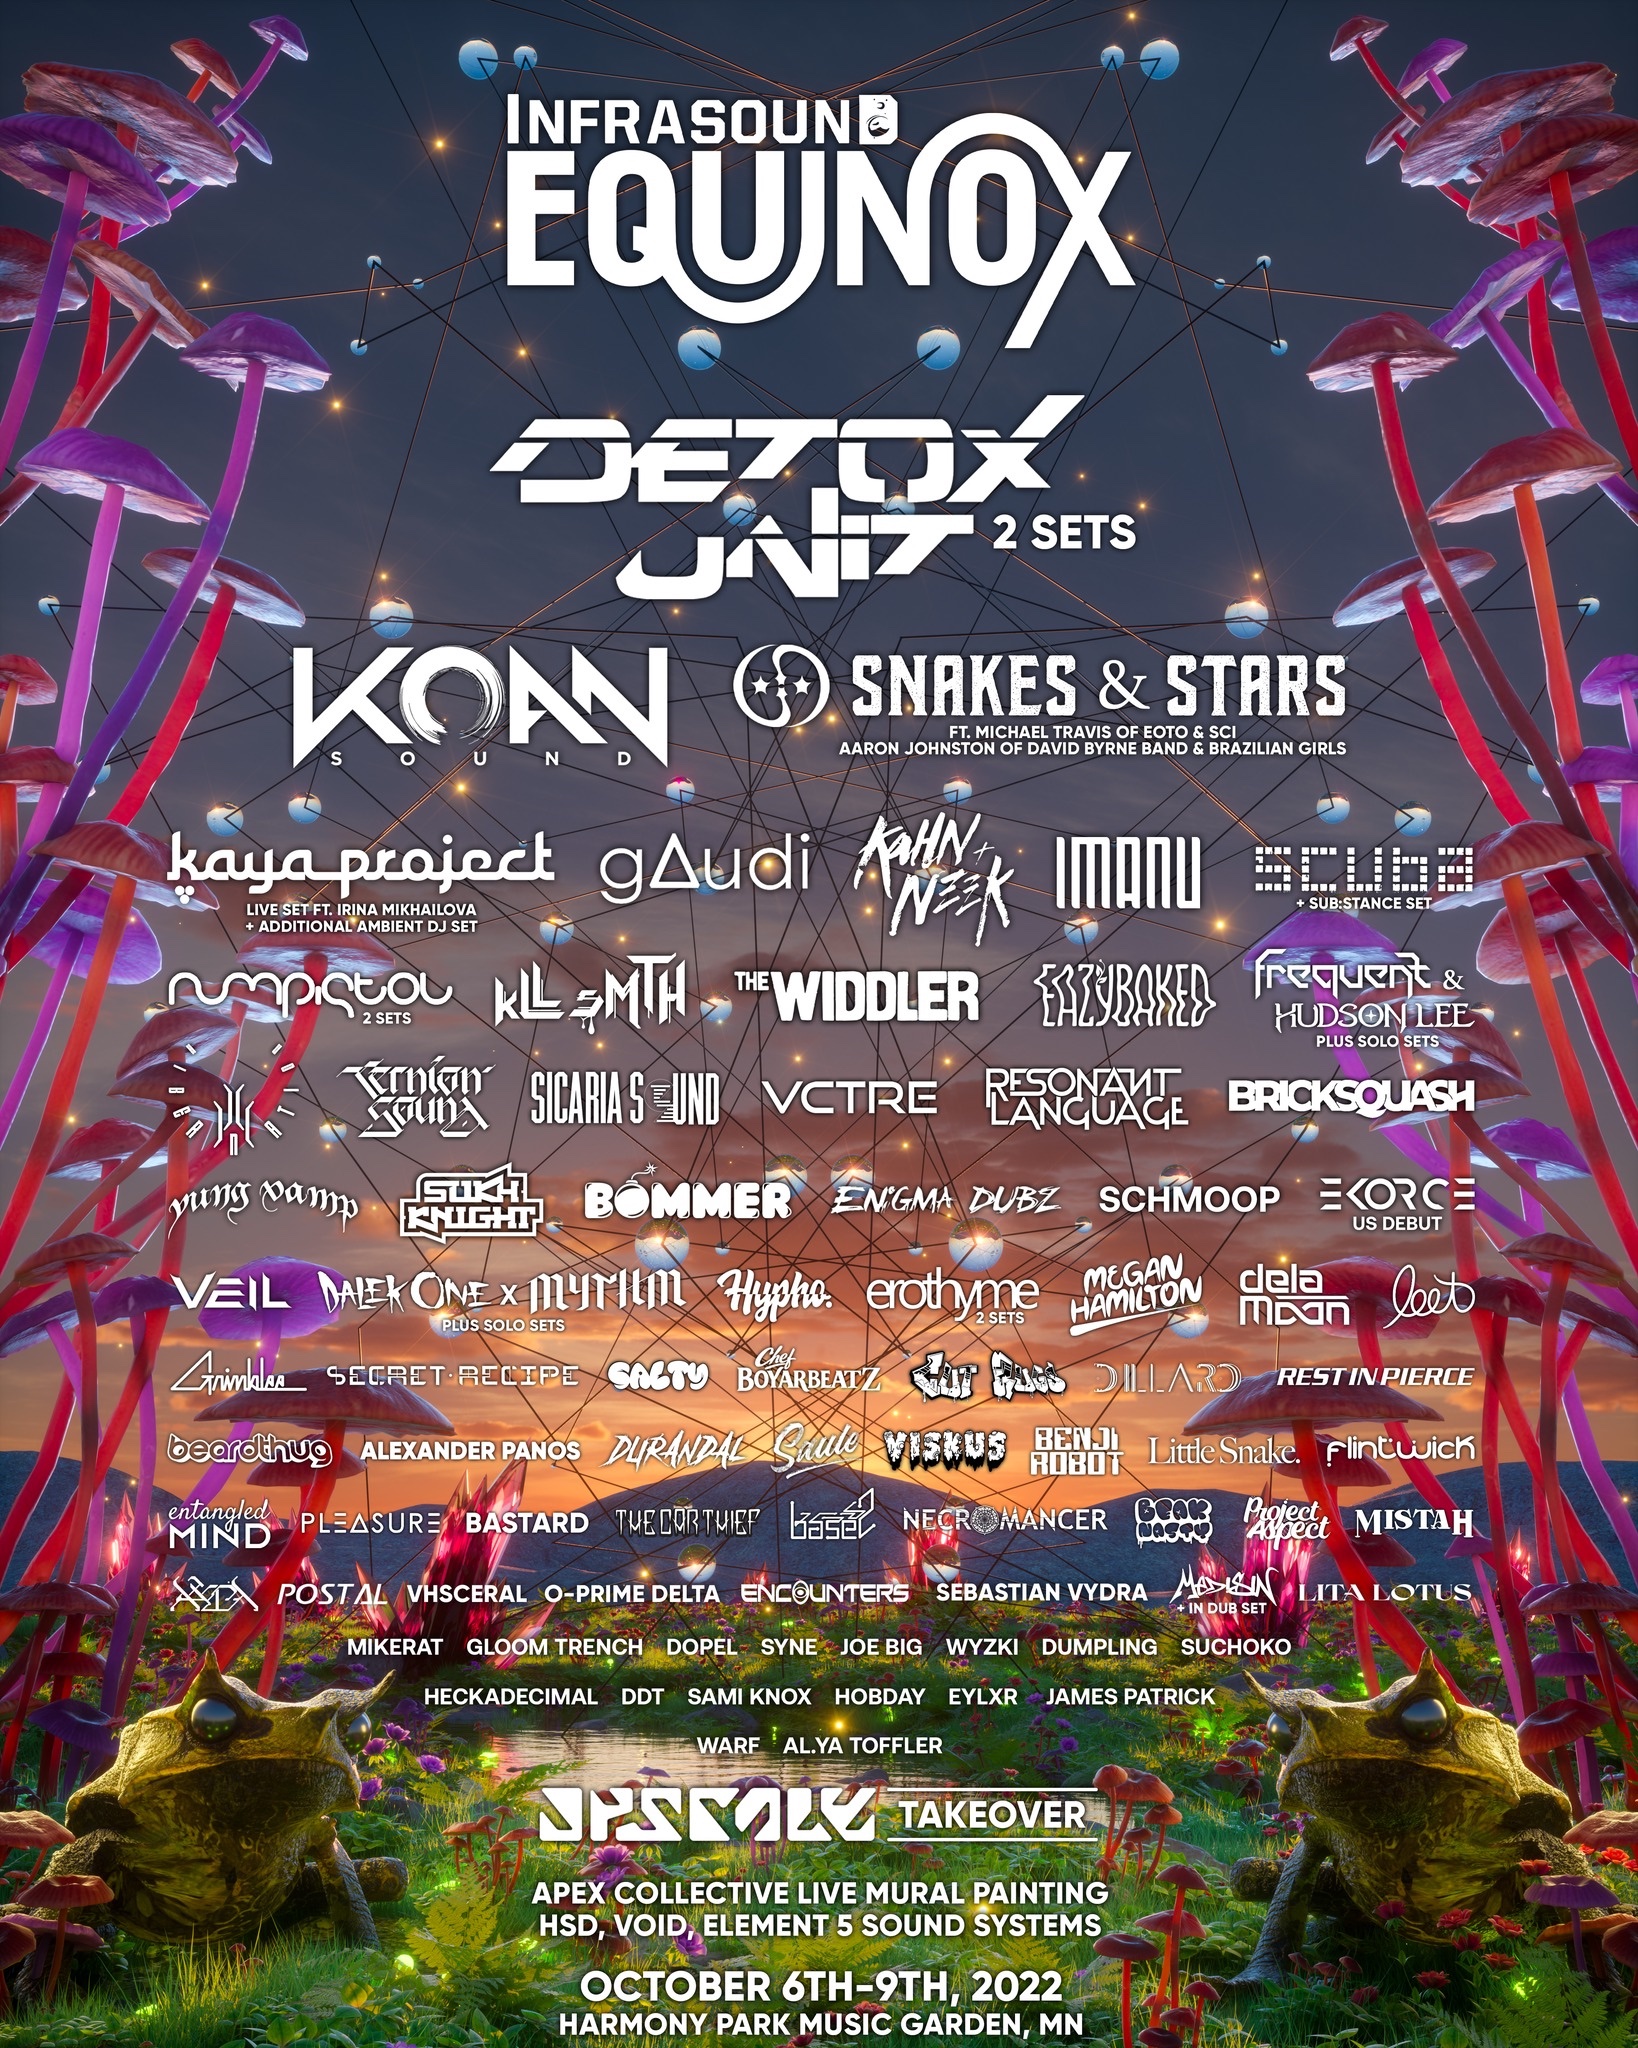 Infrasound Equinox 2022 lineup poster